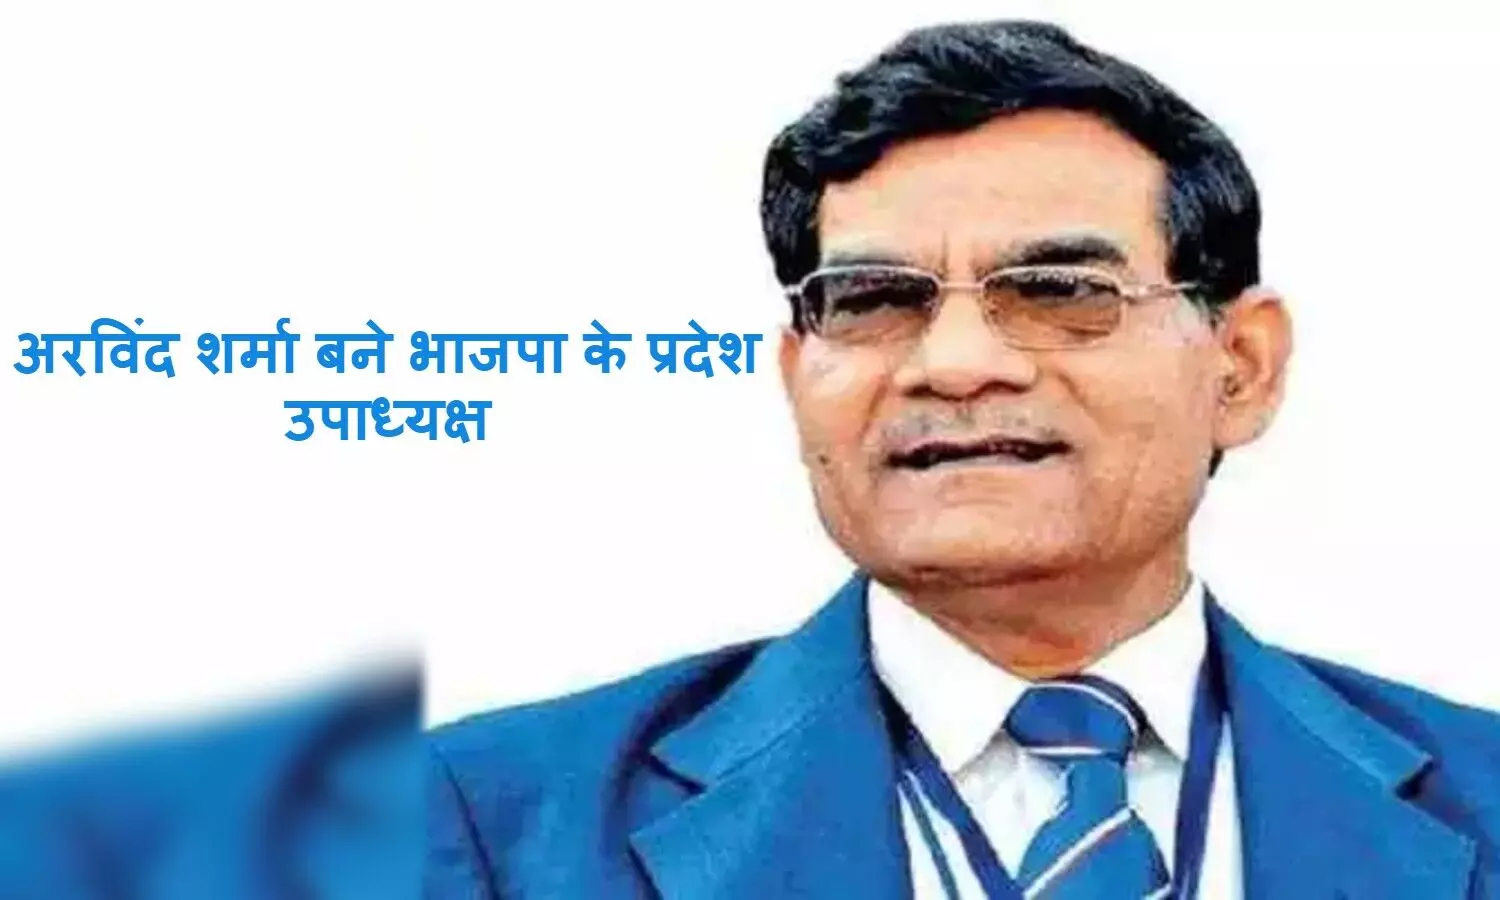 Arvind Kumar Sharma बने भाजपा के प्रदेश उपाध्यक्ष, टला मंत्रिमंडल विस्तार